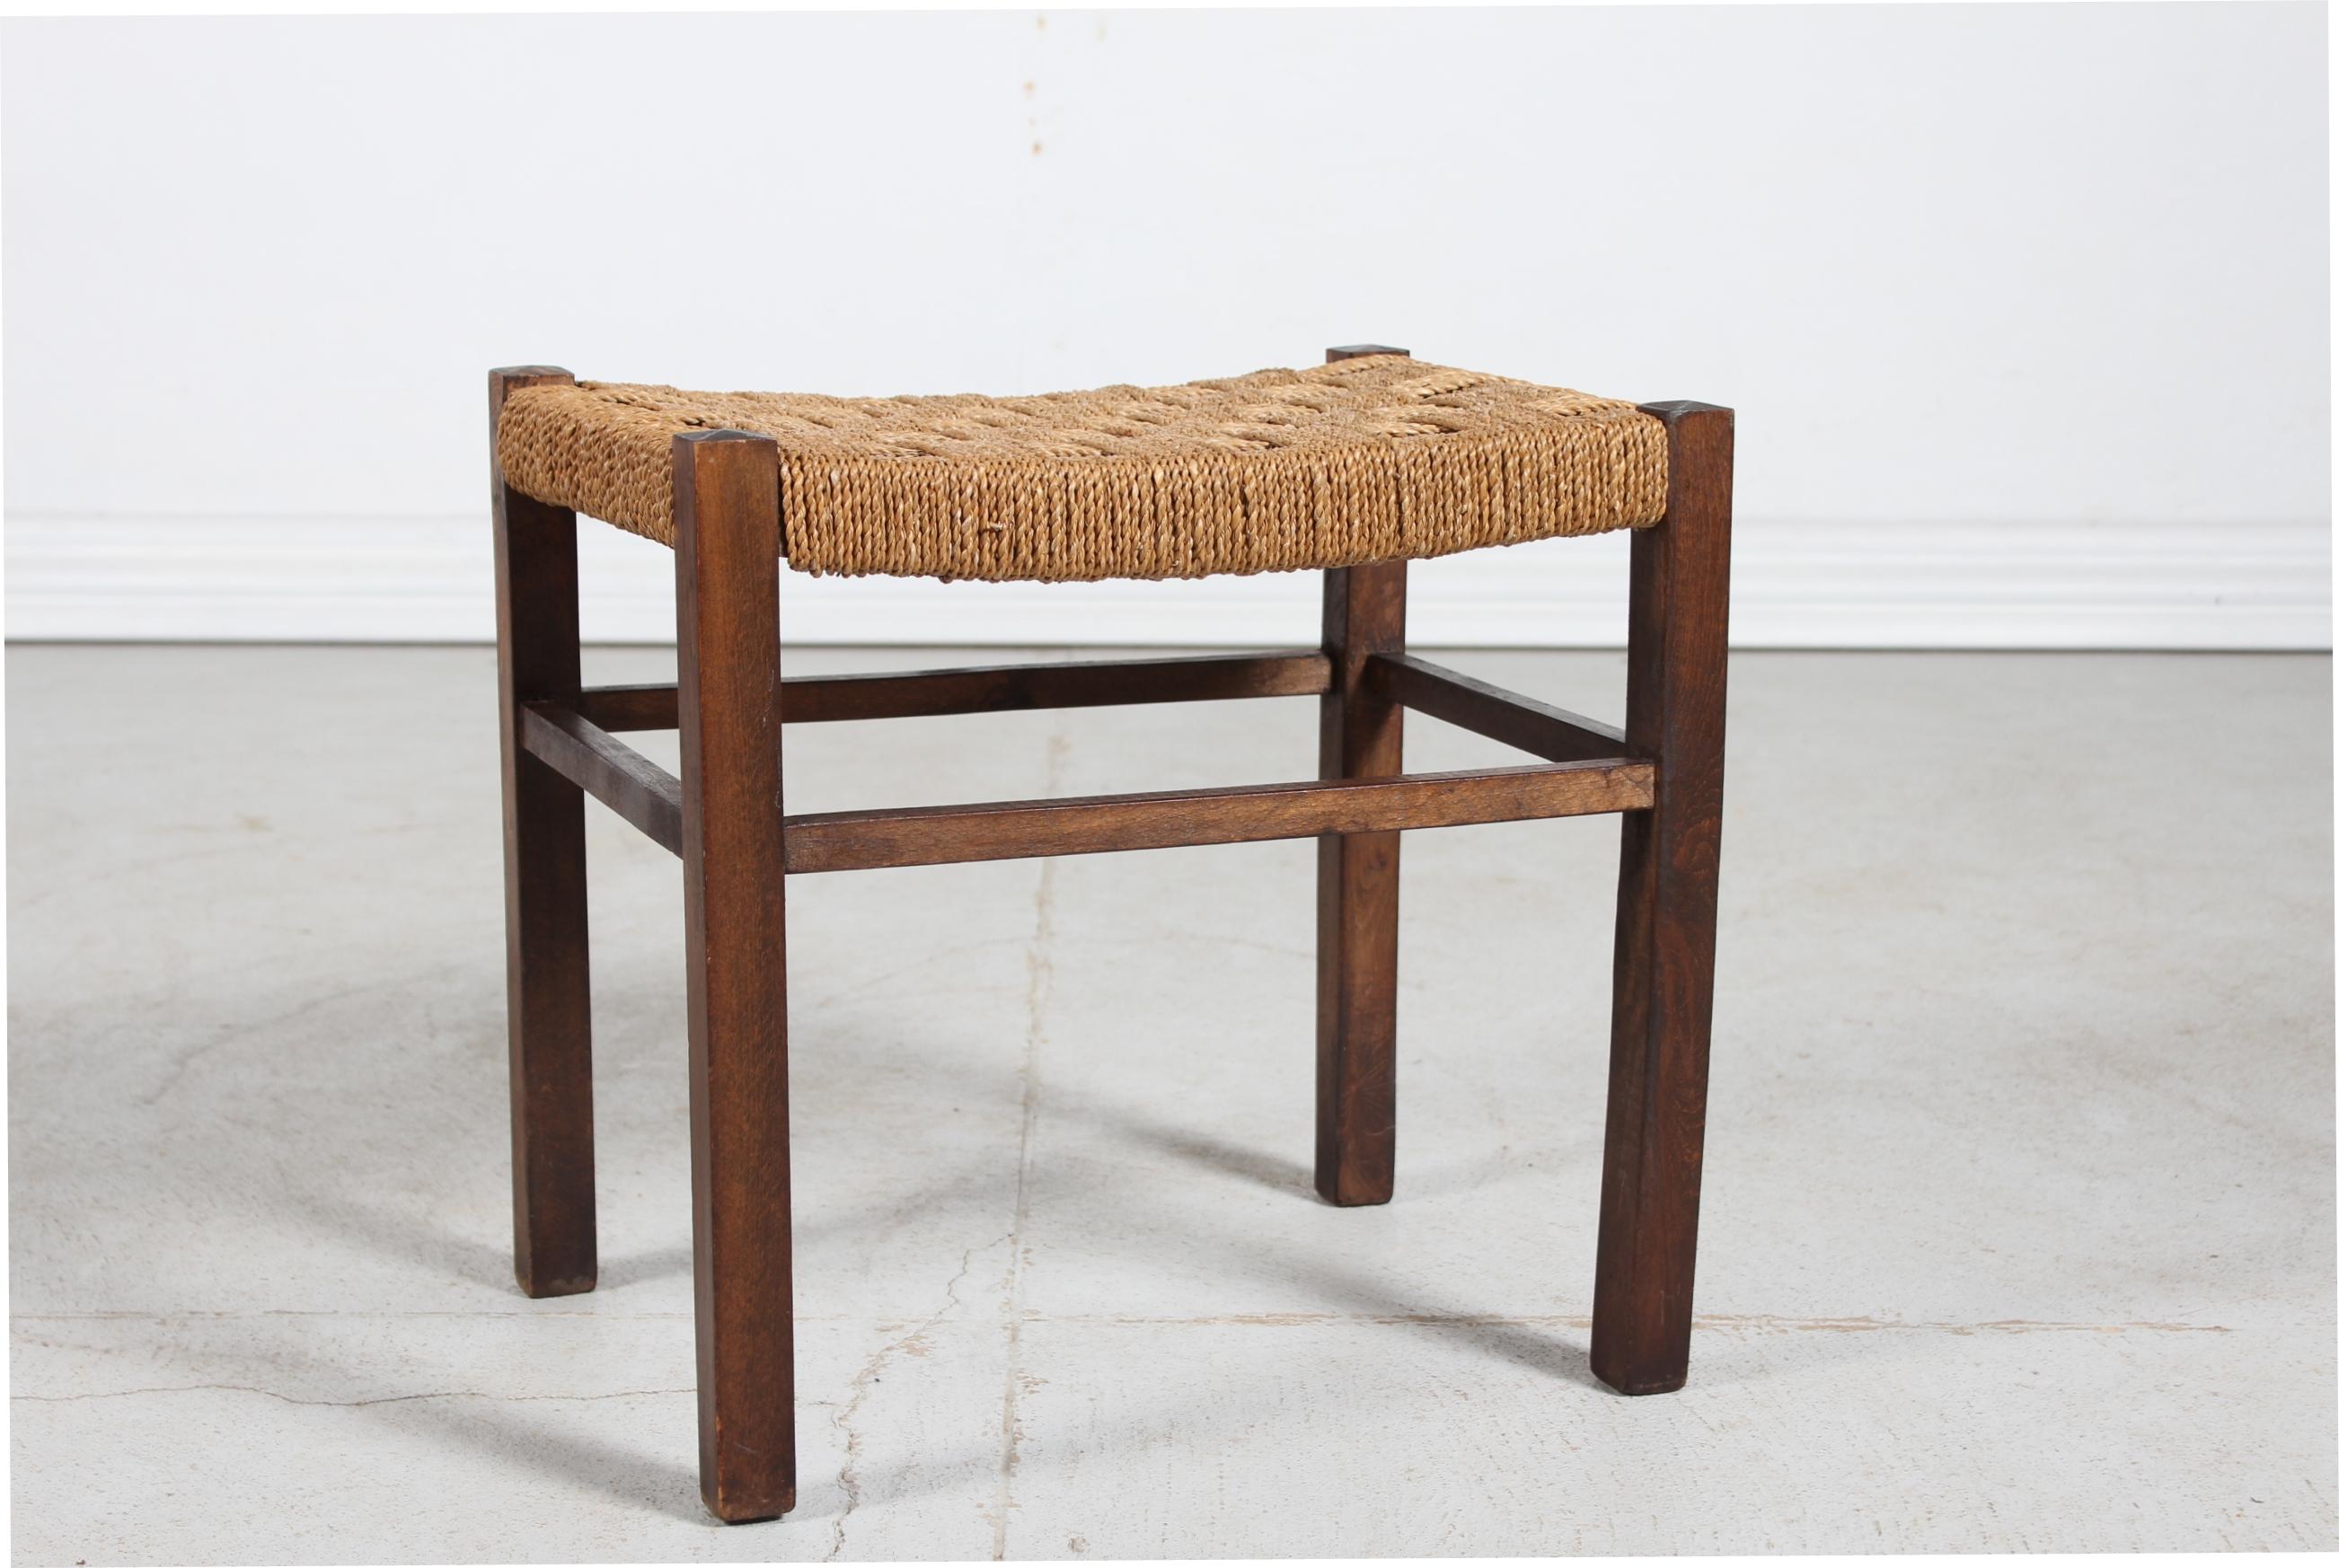 Wabi Sabi Hocker aus Skandinavien aus den 1950er Jahren.
Der Rahmen ist aus massivem, dunkel gebeiztem Holz mit Sitz aus geflochtener Kordel

Der Hocker bleibt in sehr gutem Vintage-Zustand.


 